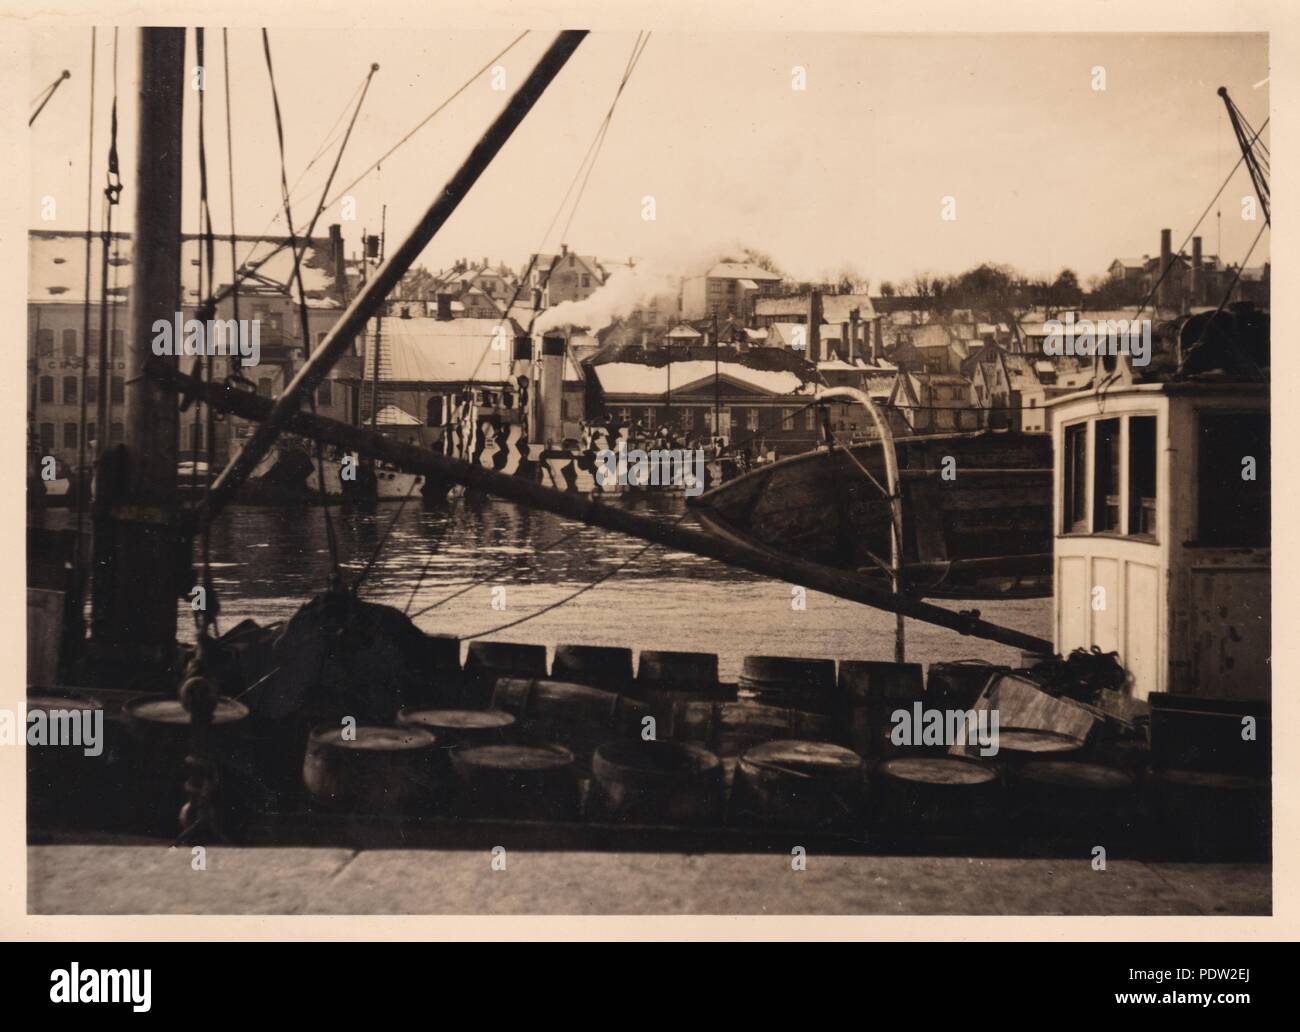 Bild aus dem Fotoalbum von Oberfeldwebel Karl gendner von 1. Staffel, Kampfgeschwader 40: Der Hafen von Stavanger, wie es war am 1. April 1941, unter deutscher Besatzung. Stockfoto